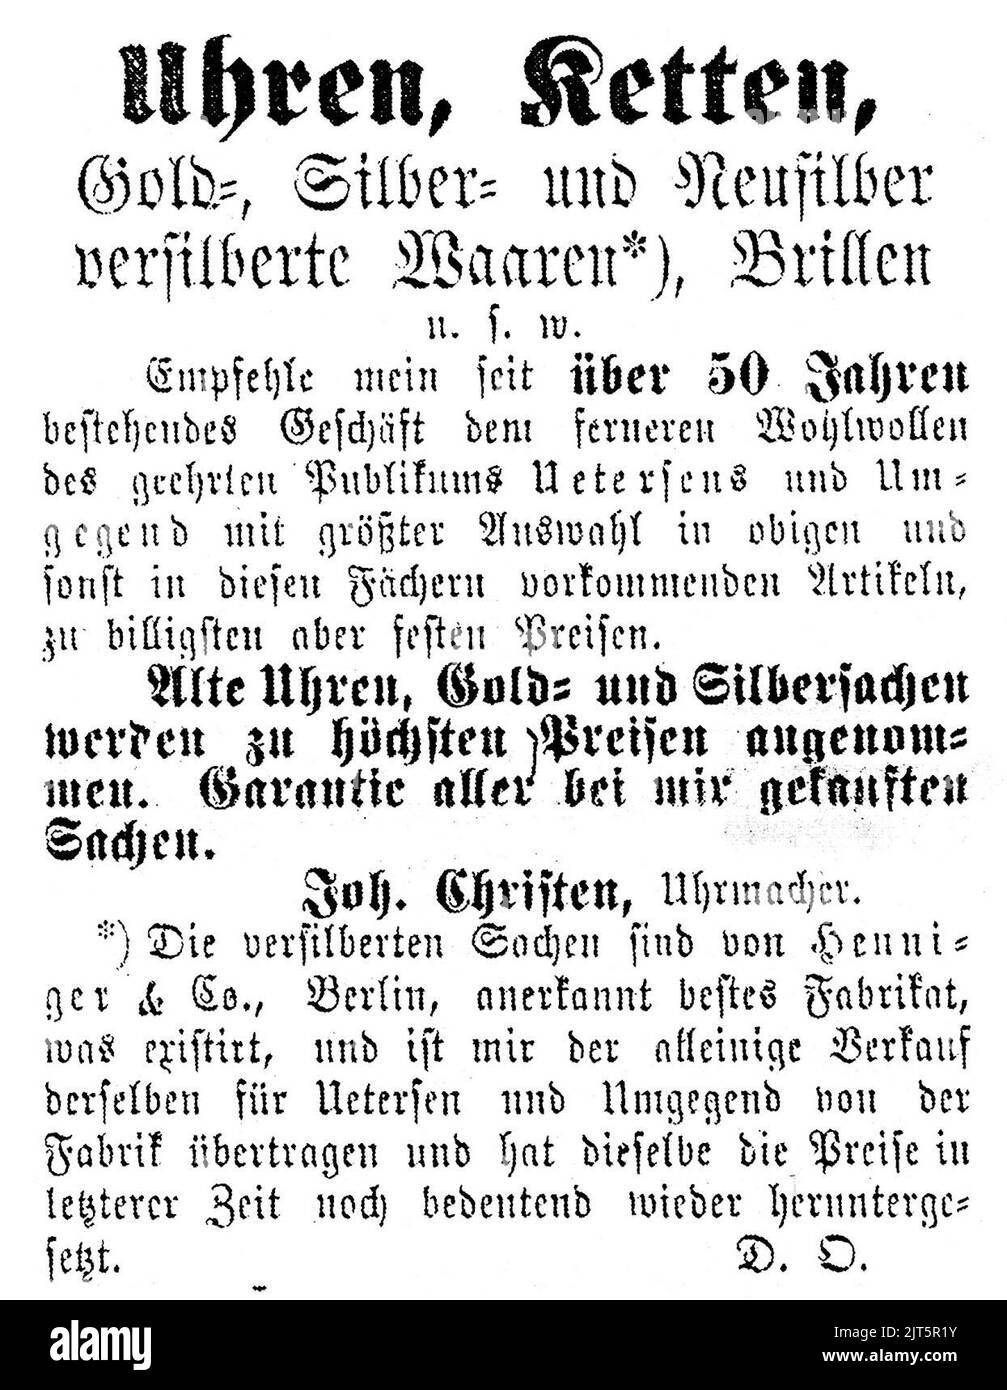 Uetersen Anzeige Joh. Christen Uhrmacher 1886. Stock Photo